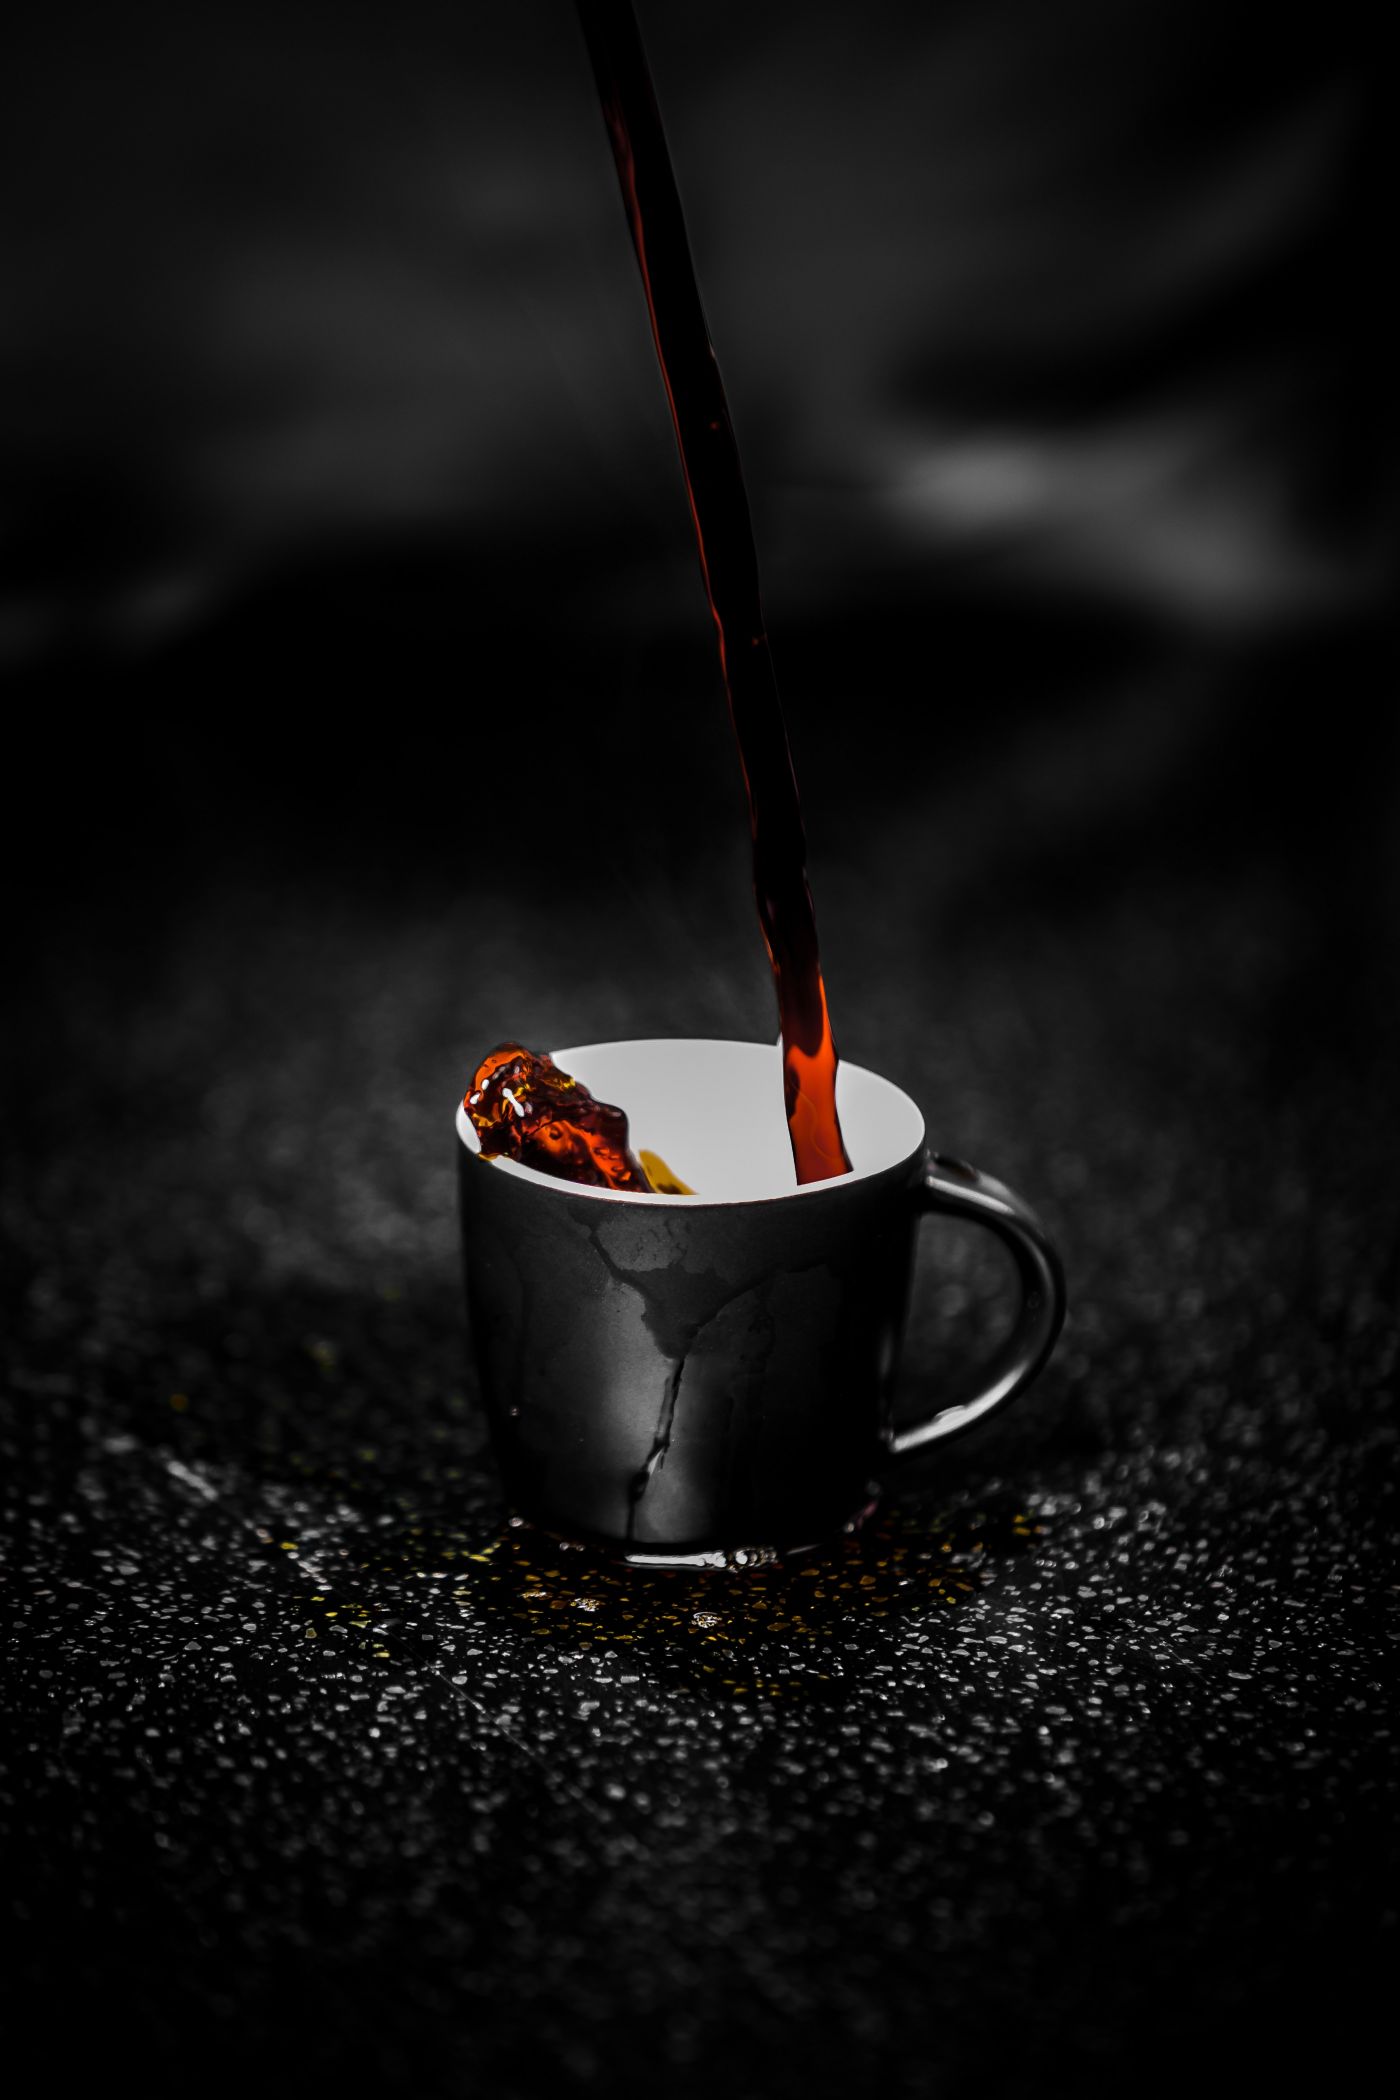 高清晰倒入杯子的红茶水壁纸 欧莱凯设计网 08php Com